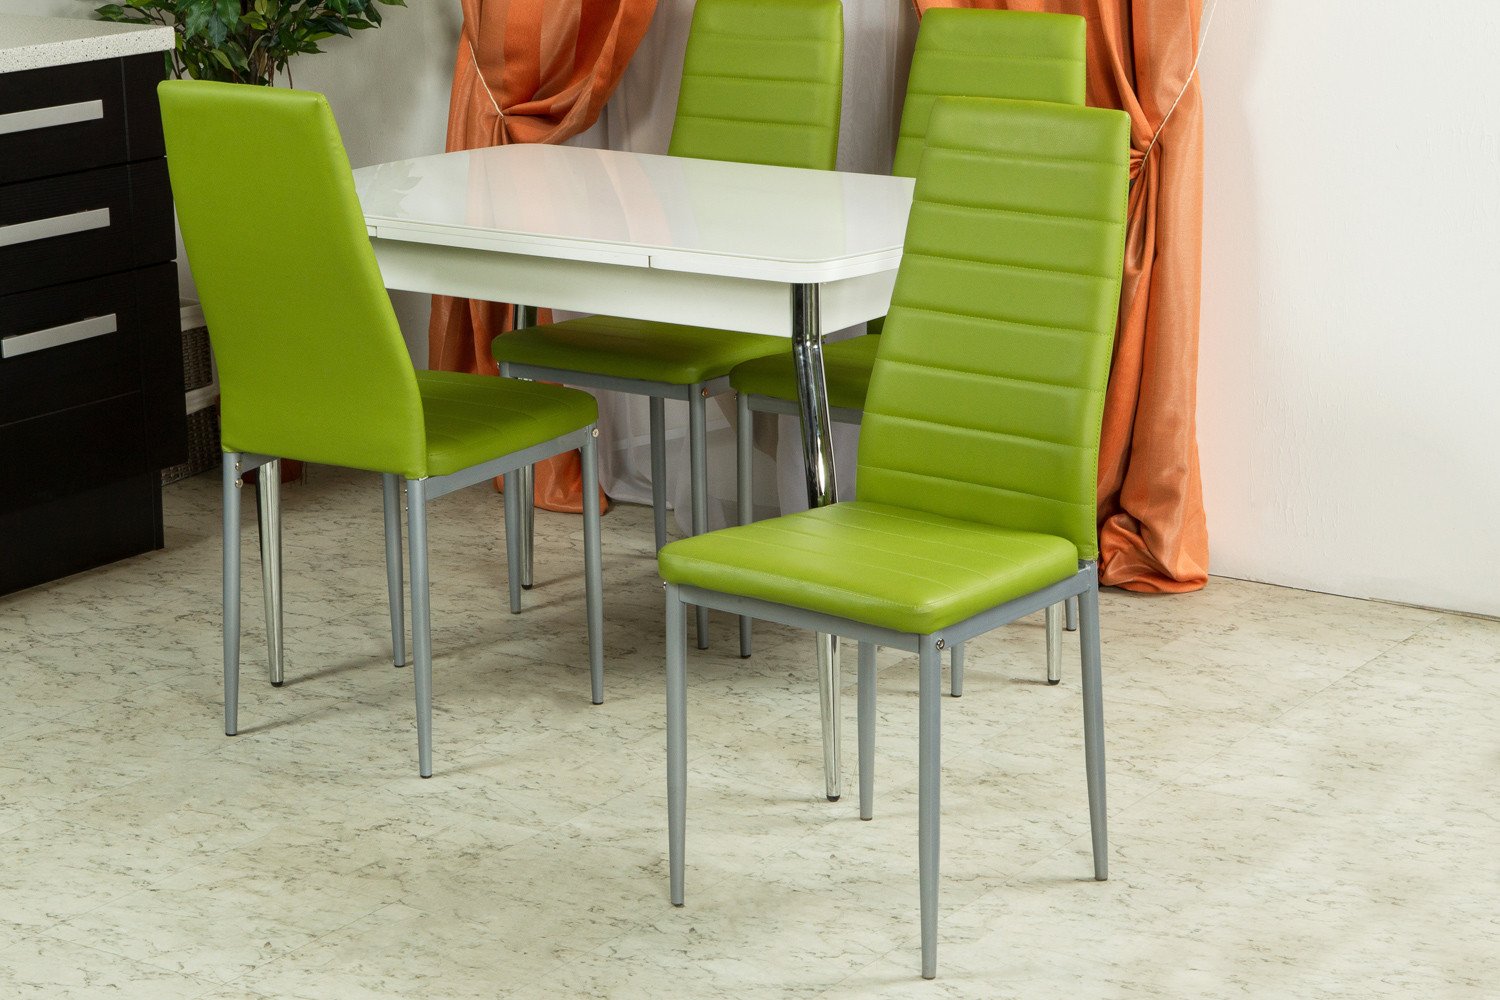 Купить кухонные стулья в минске. Hoff стул кухонный зеленый. Хофф стулья кухонные. Стулья Толедо кухонные. Стул Толедо зеленый.